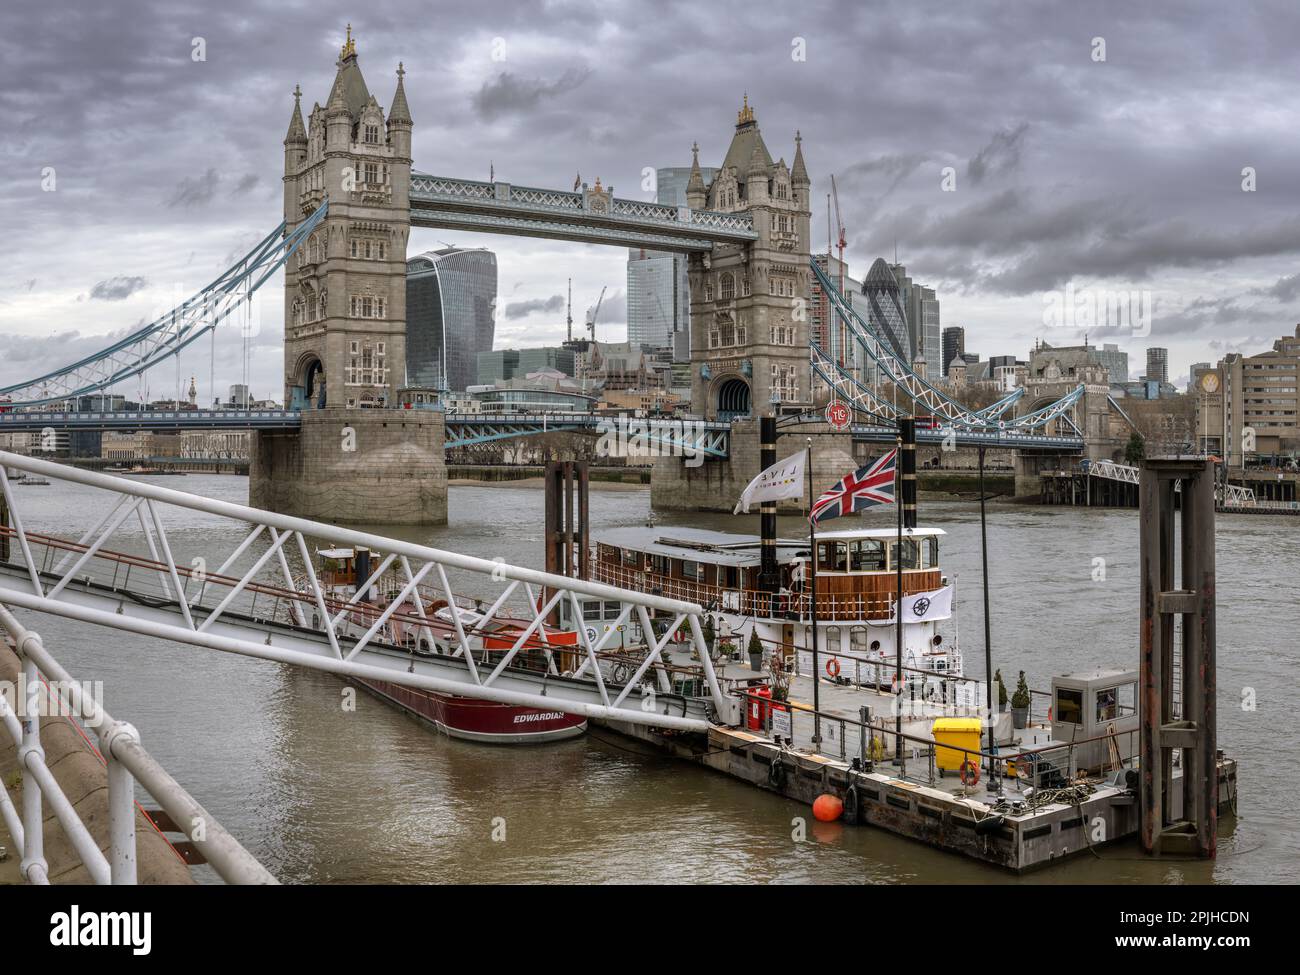 L'emblématique Tower Bridge, reconnu dans le monde entier, est un bâtiment classé de catégorie I et traverse la Tamise près de la Tour de Londres et de la ville Banque D'Images